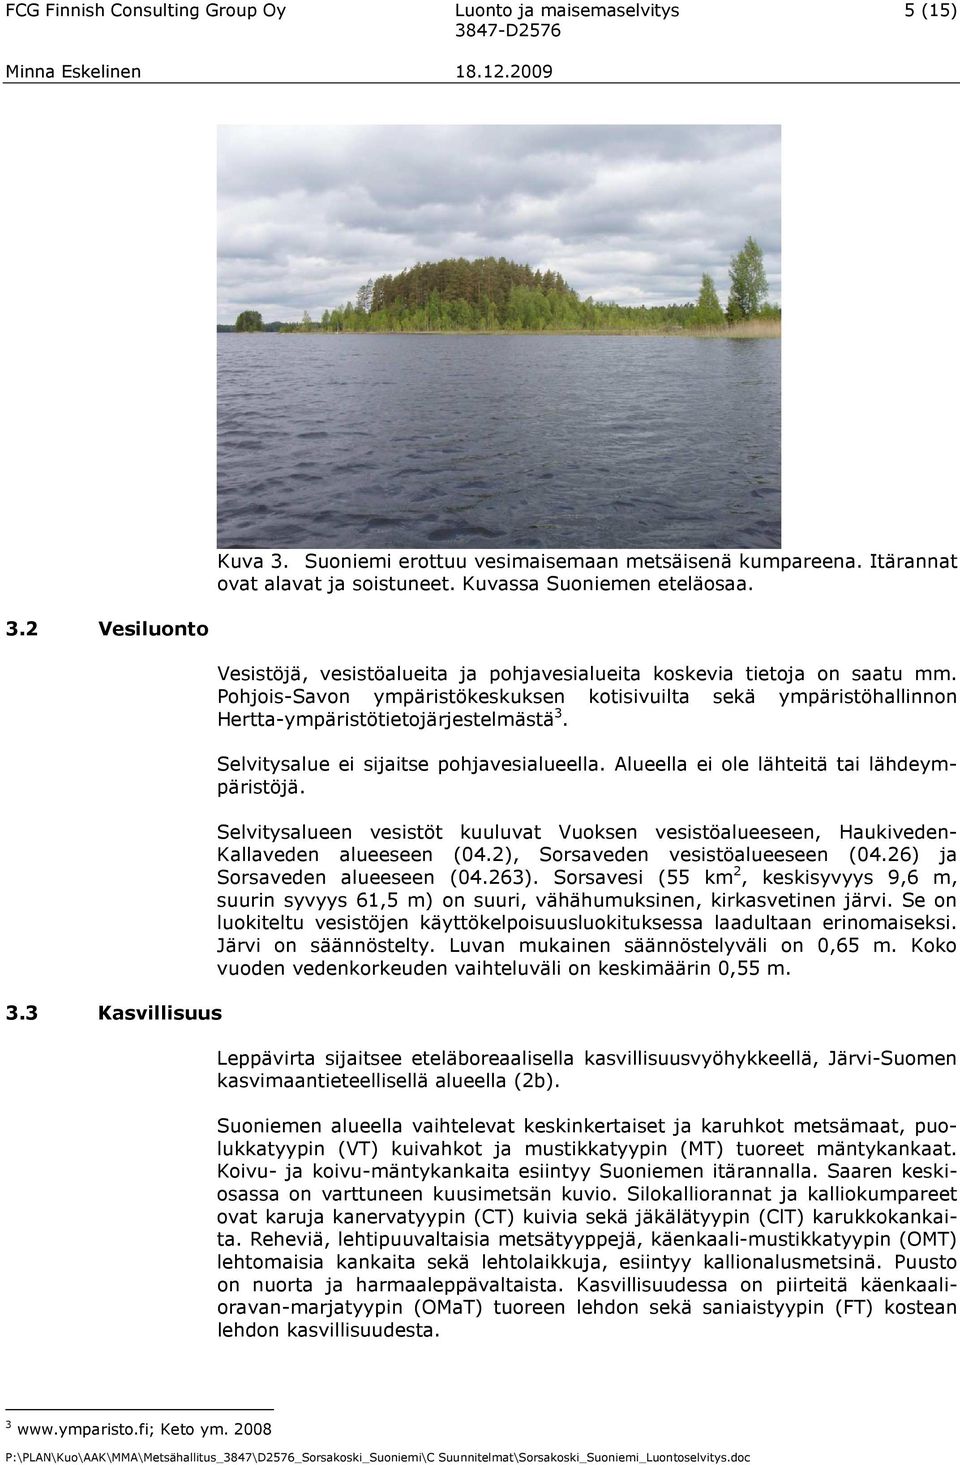 Pohjois-Savon ympäristökeskuksen kotisivuilta sekä ympäristöhallinnon Hertta-ympäristötietojärjestelmästä 3. Selvitysalue ei sijaitse pohjavesialueella. Alueella ei ole lähteitä tai lähdeympäristöjä.